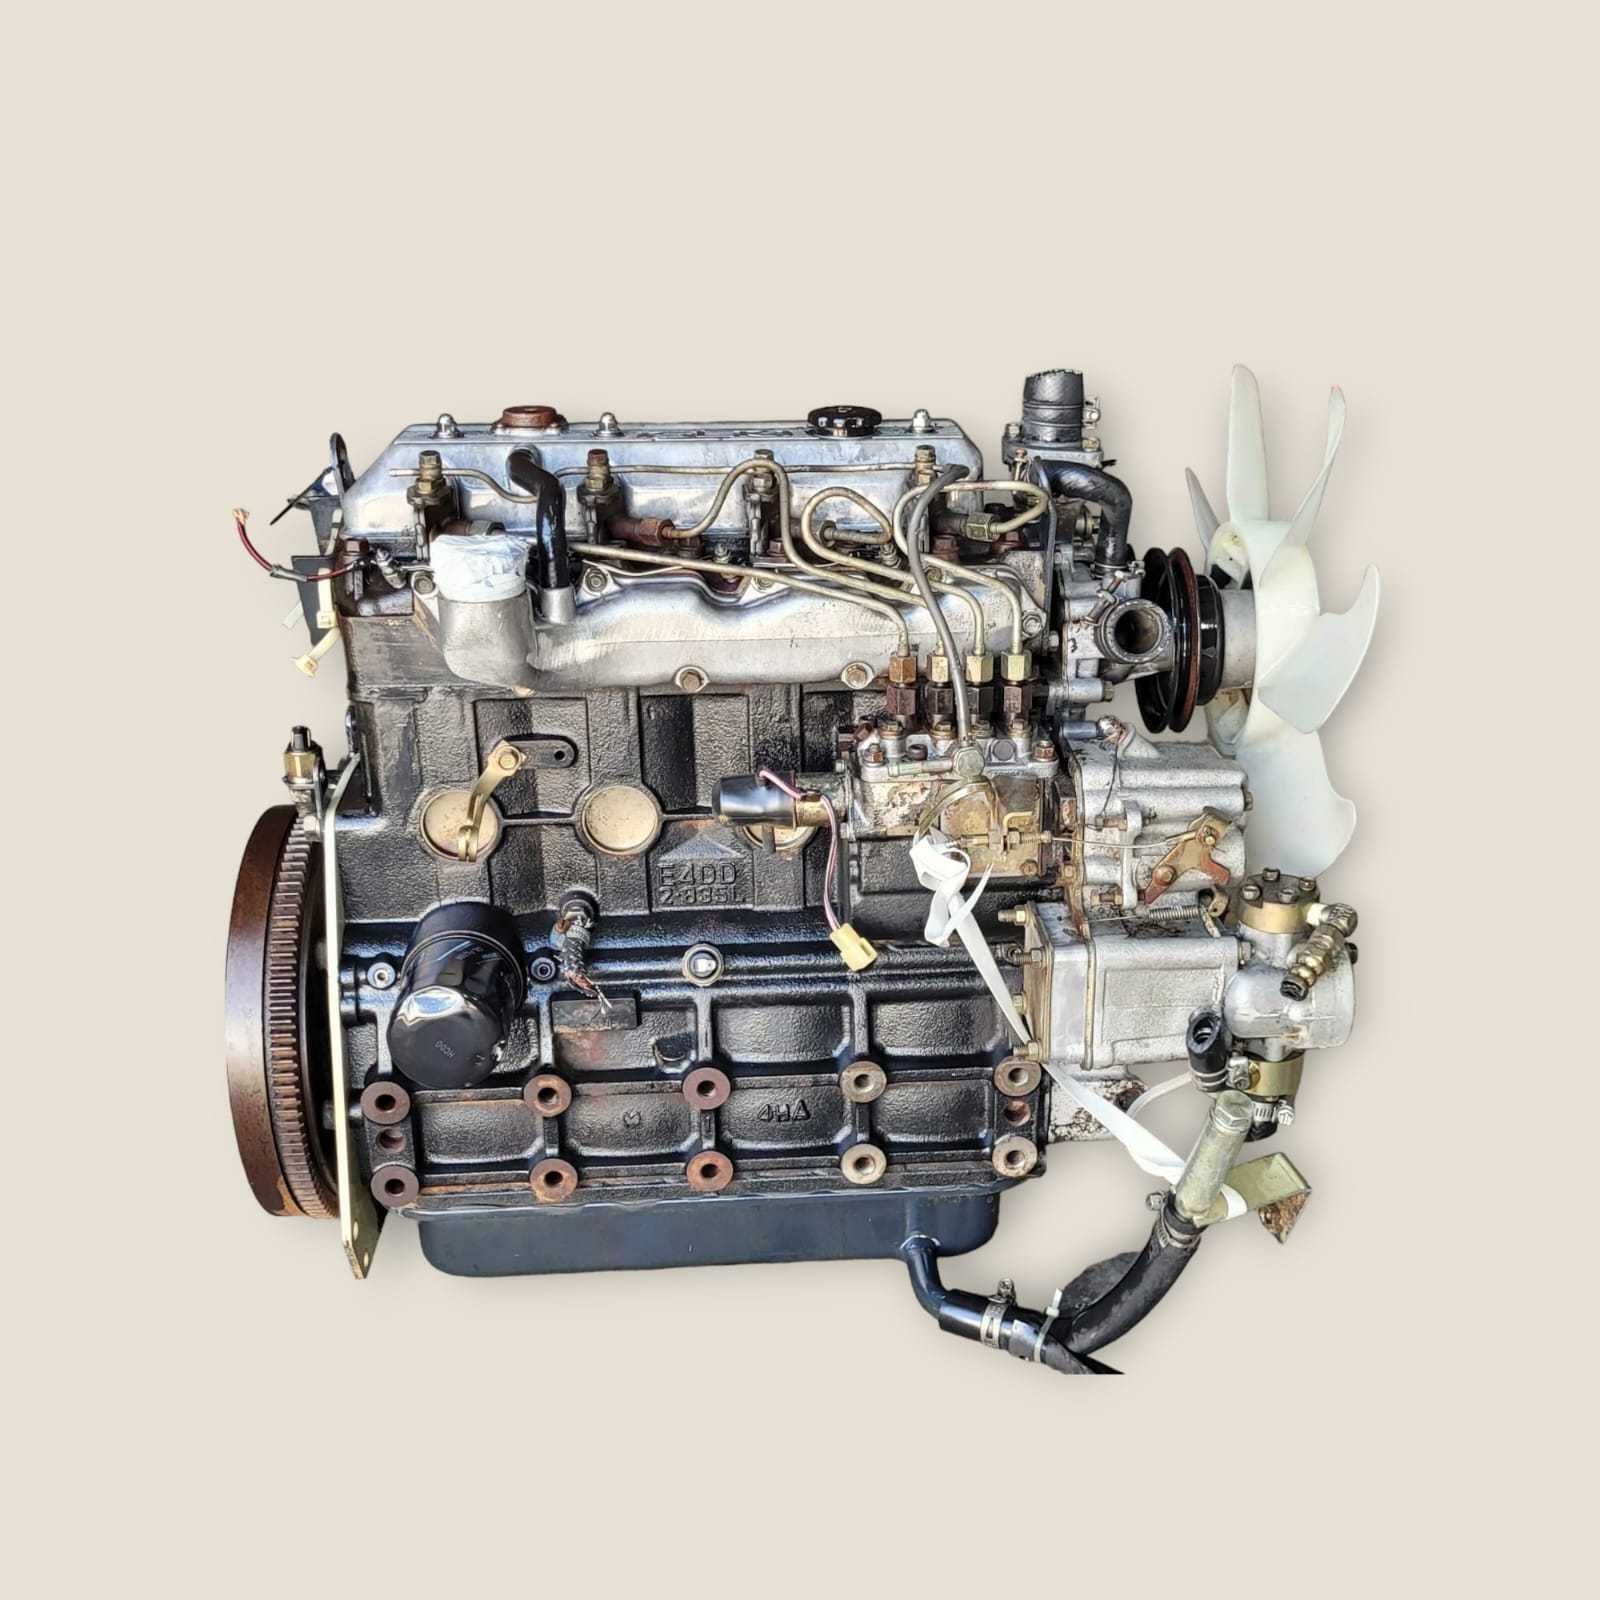 Motor Iseki tip E4DD - 2.835cmc - 49CP